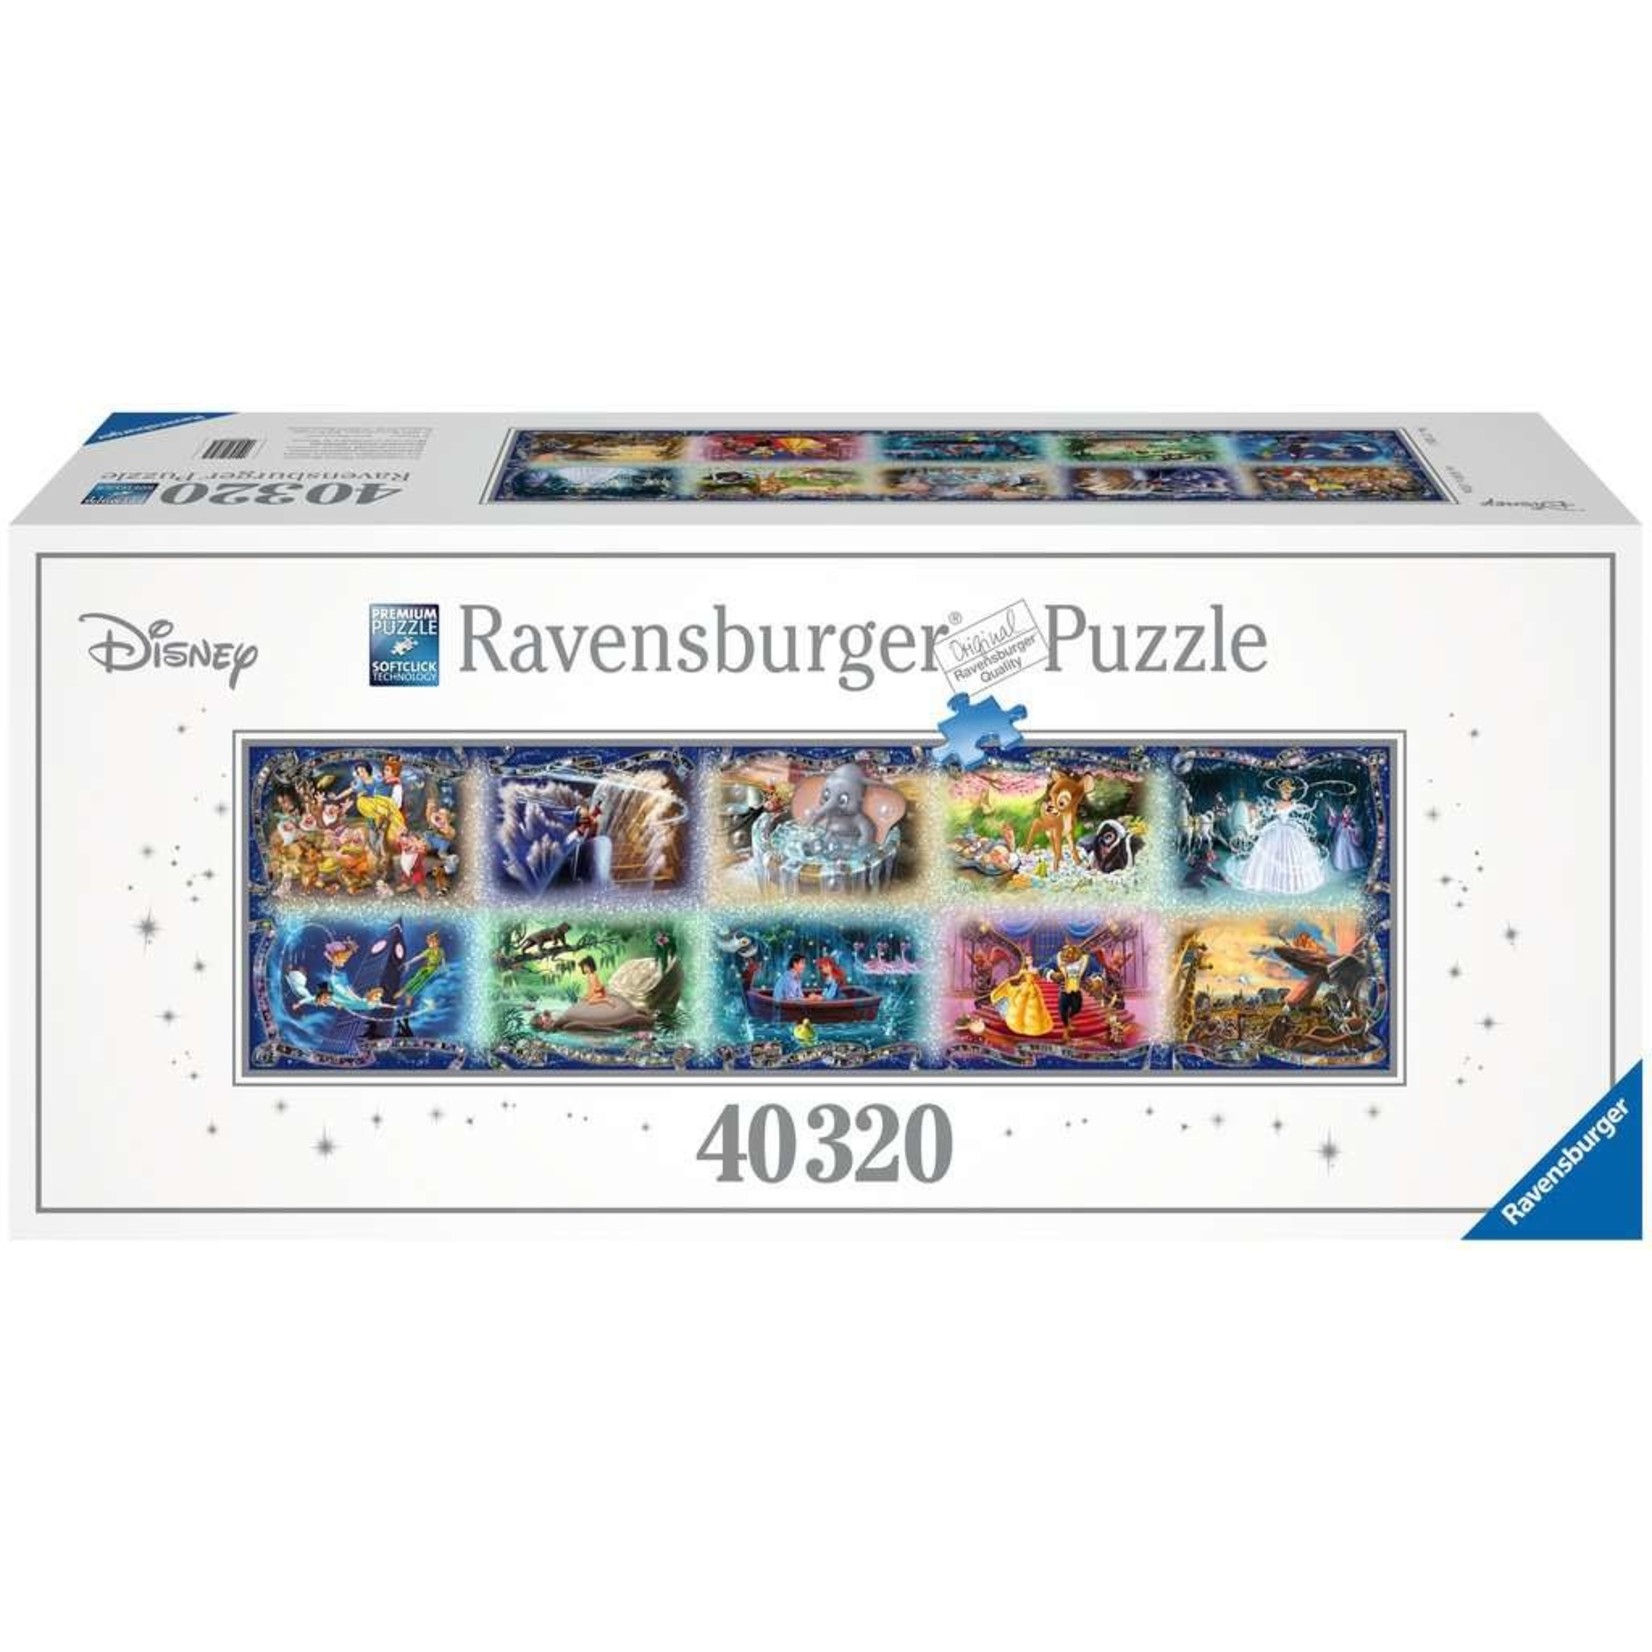 Memorable Disney Moments 40,320 Piece Puzzle